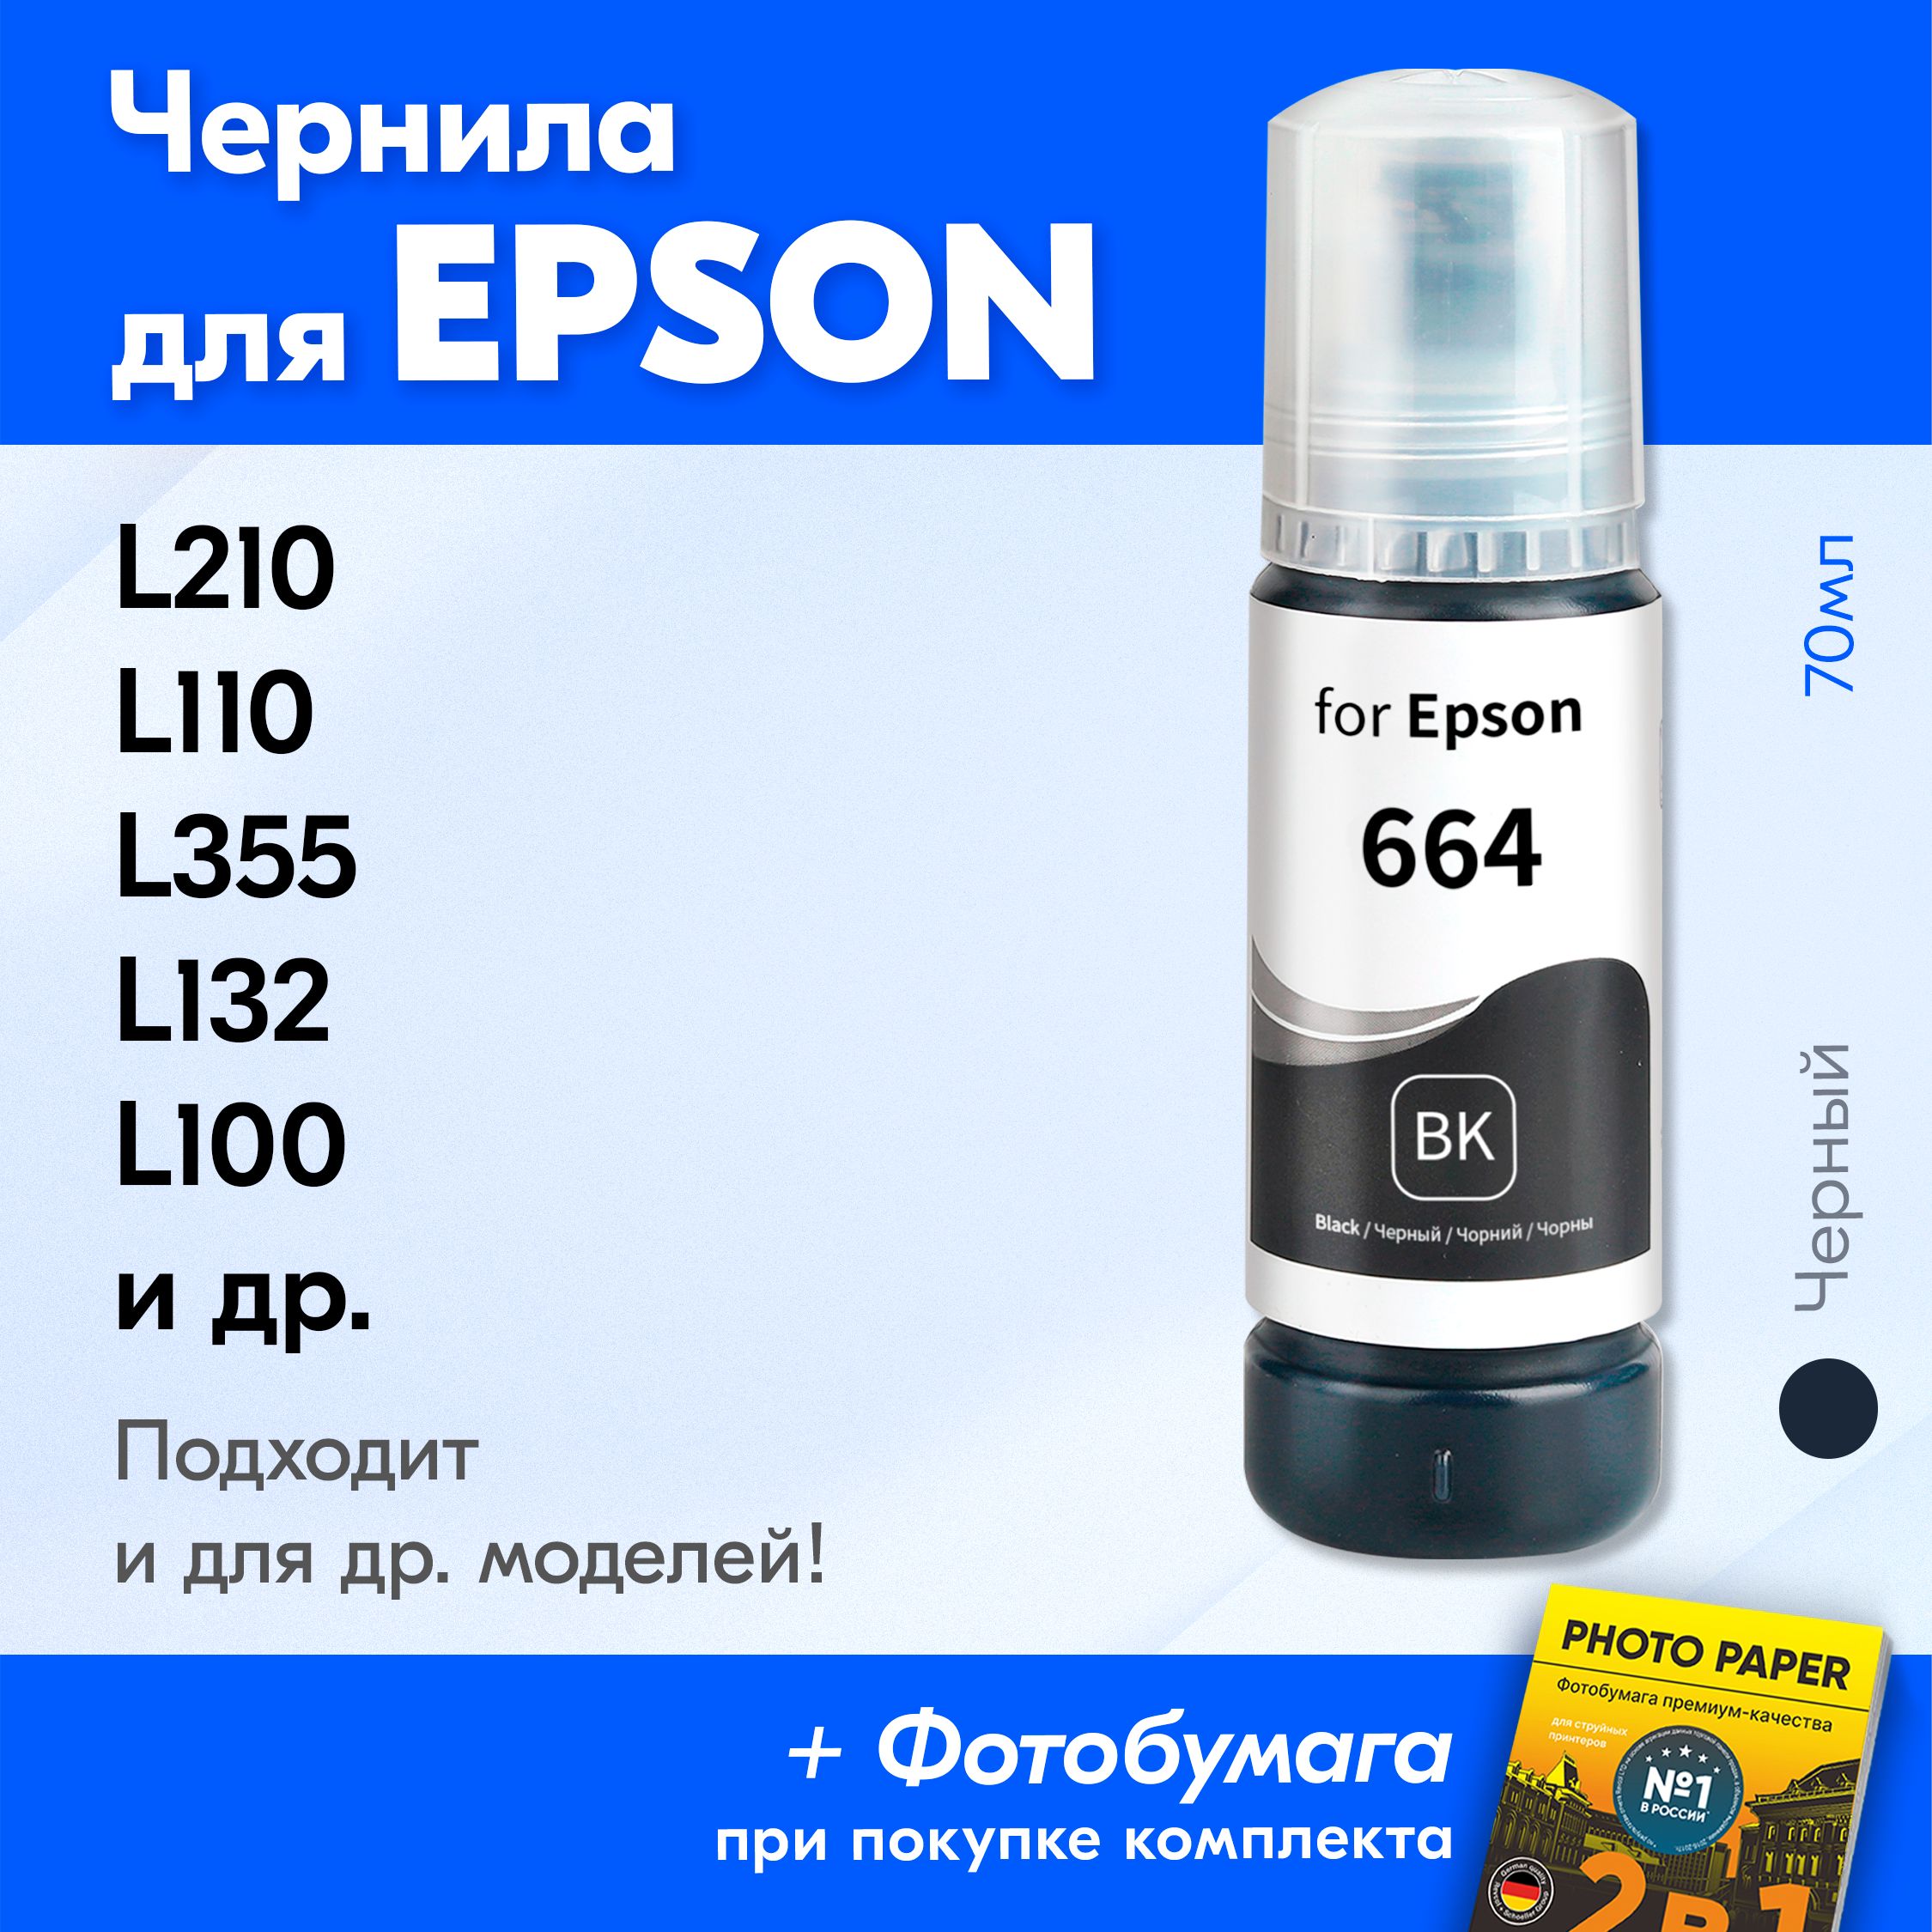 Матовая фотобумага INKSYSTEM 230g, 10x15, 100 л. для печати на Epson L120